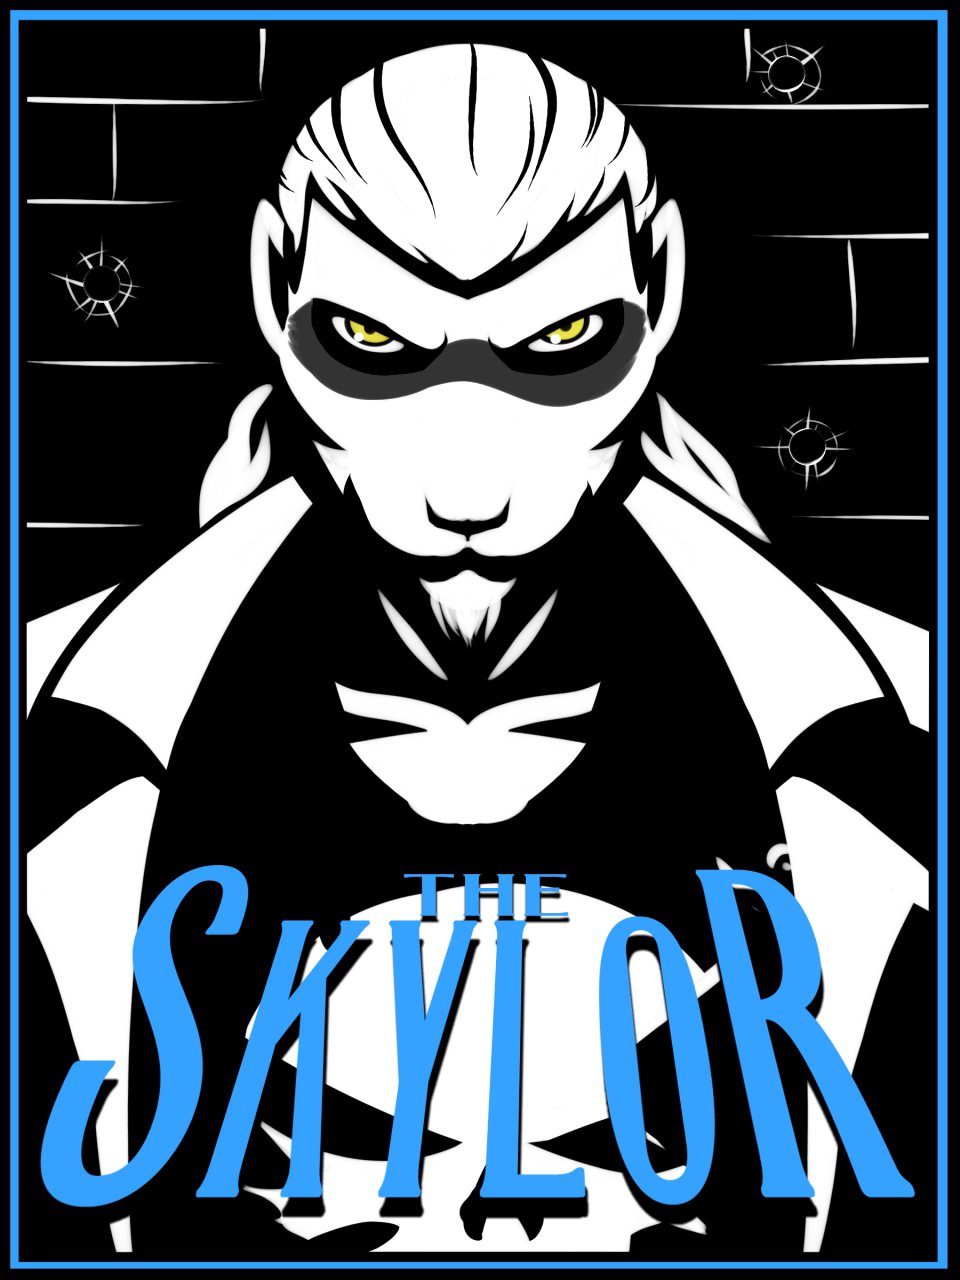 The Skylor